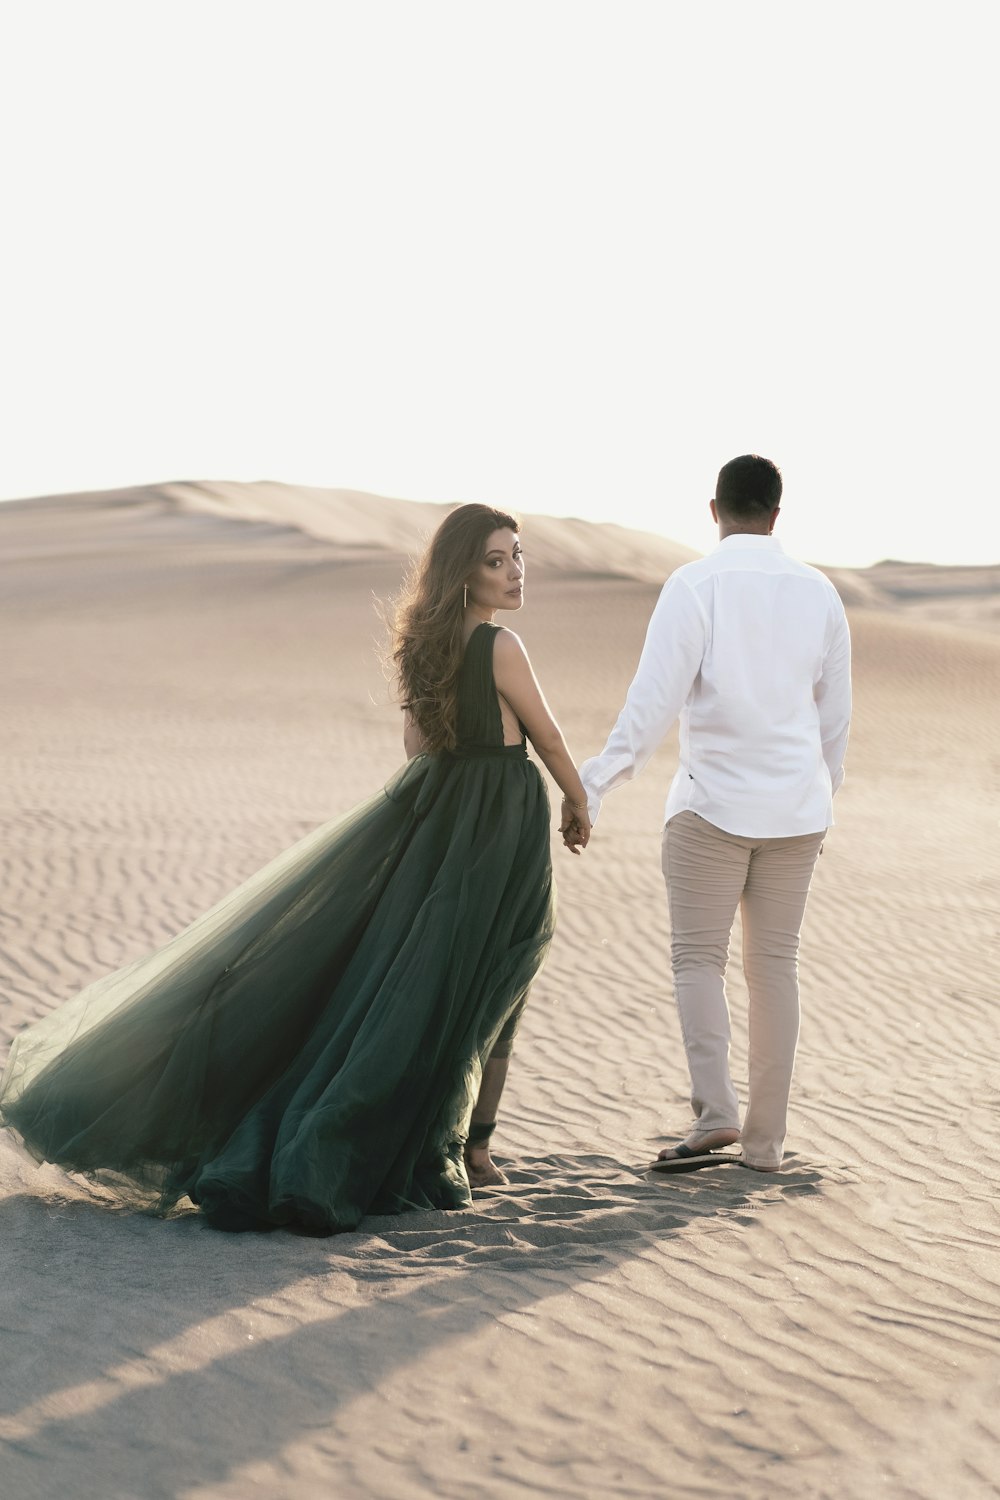 Hombre y mujer tomados de la mano mientras caminan sobre la arena durante el día